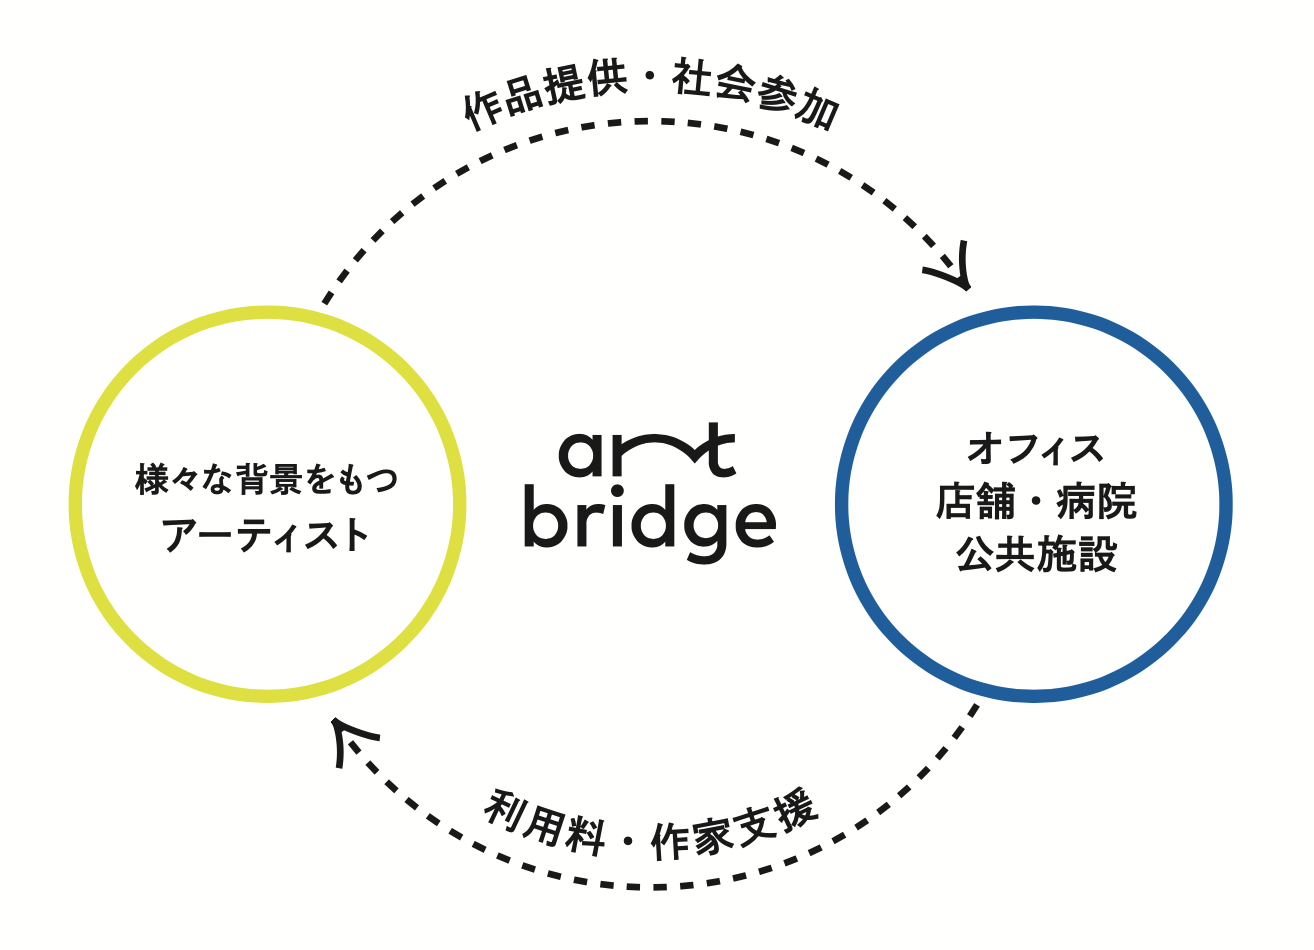 art bridge